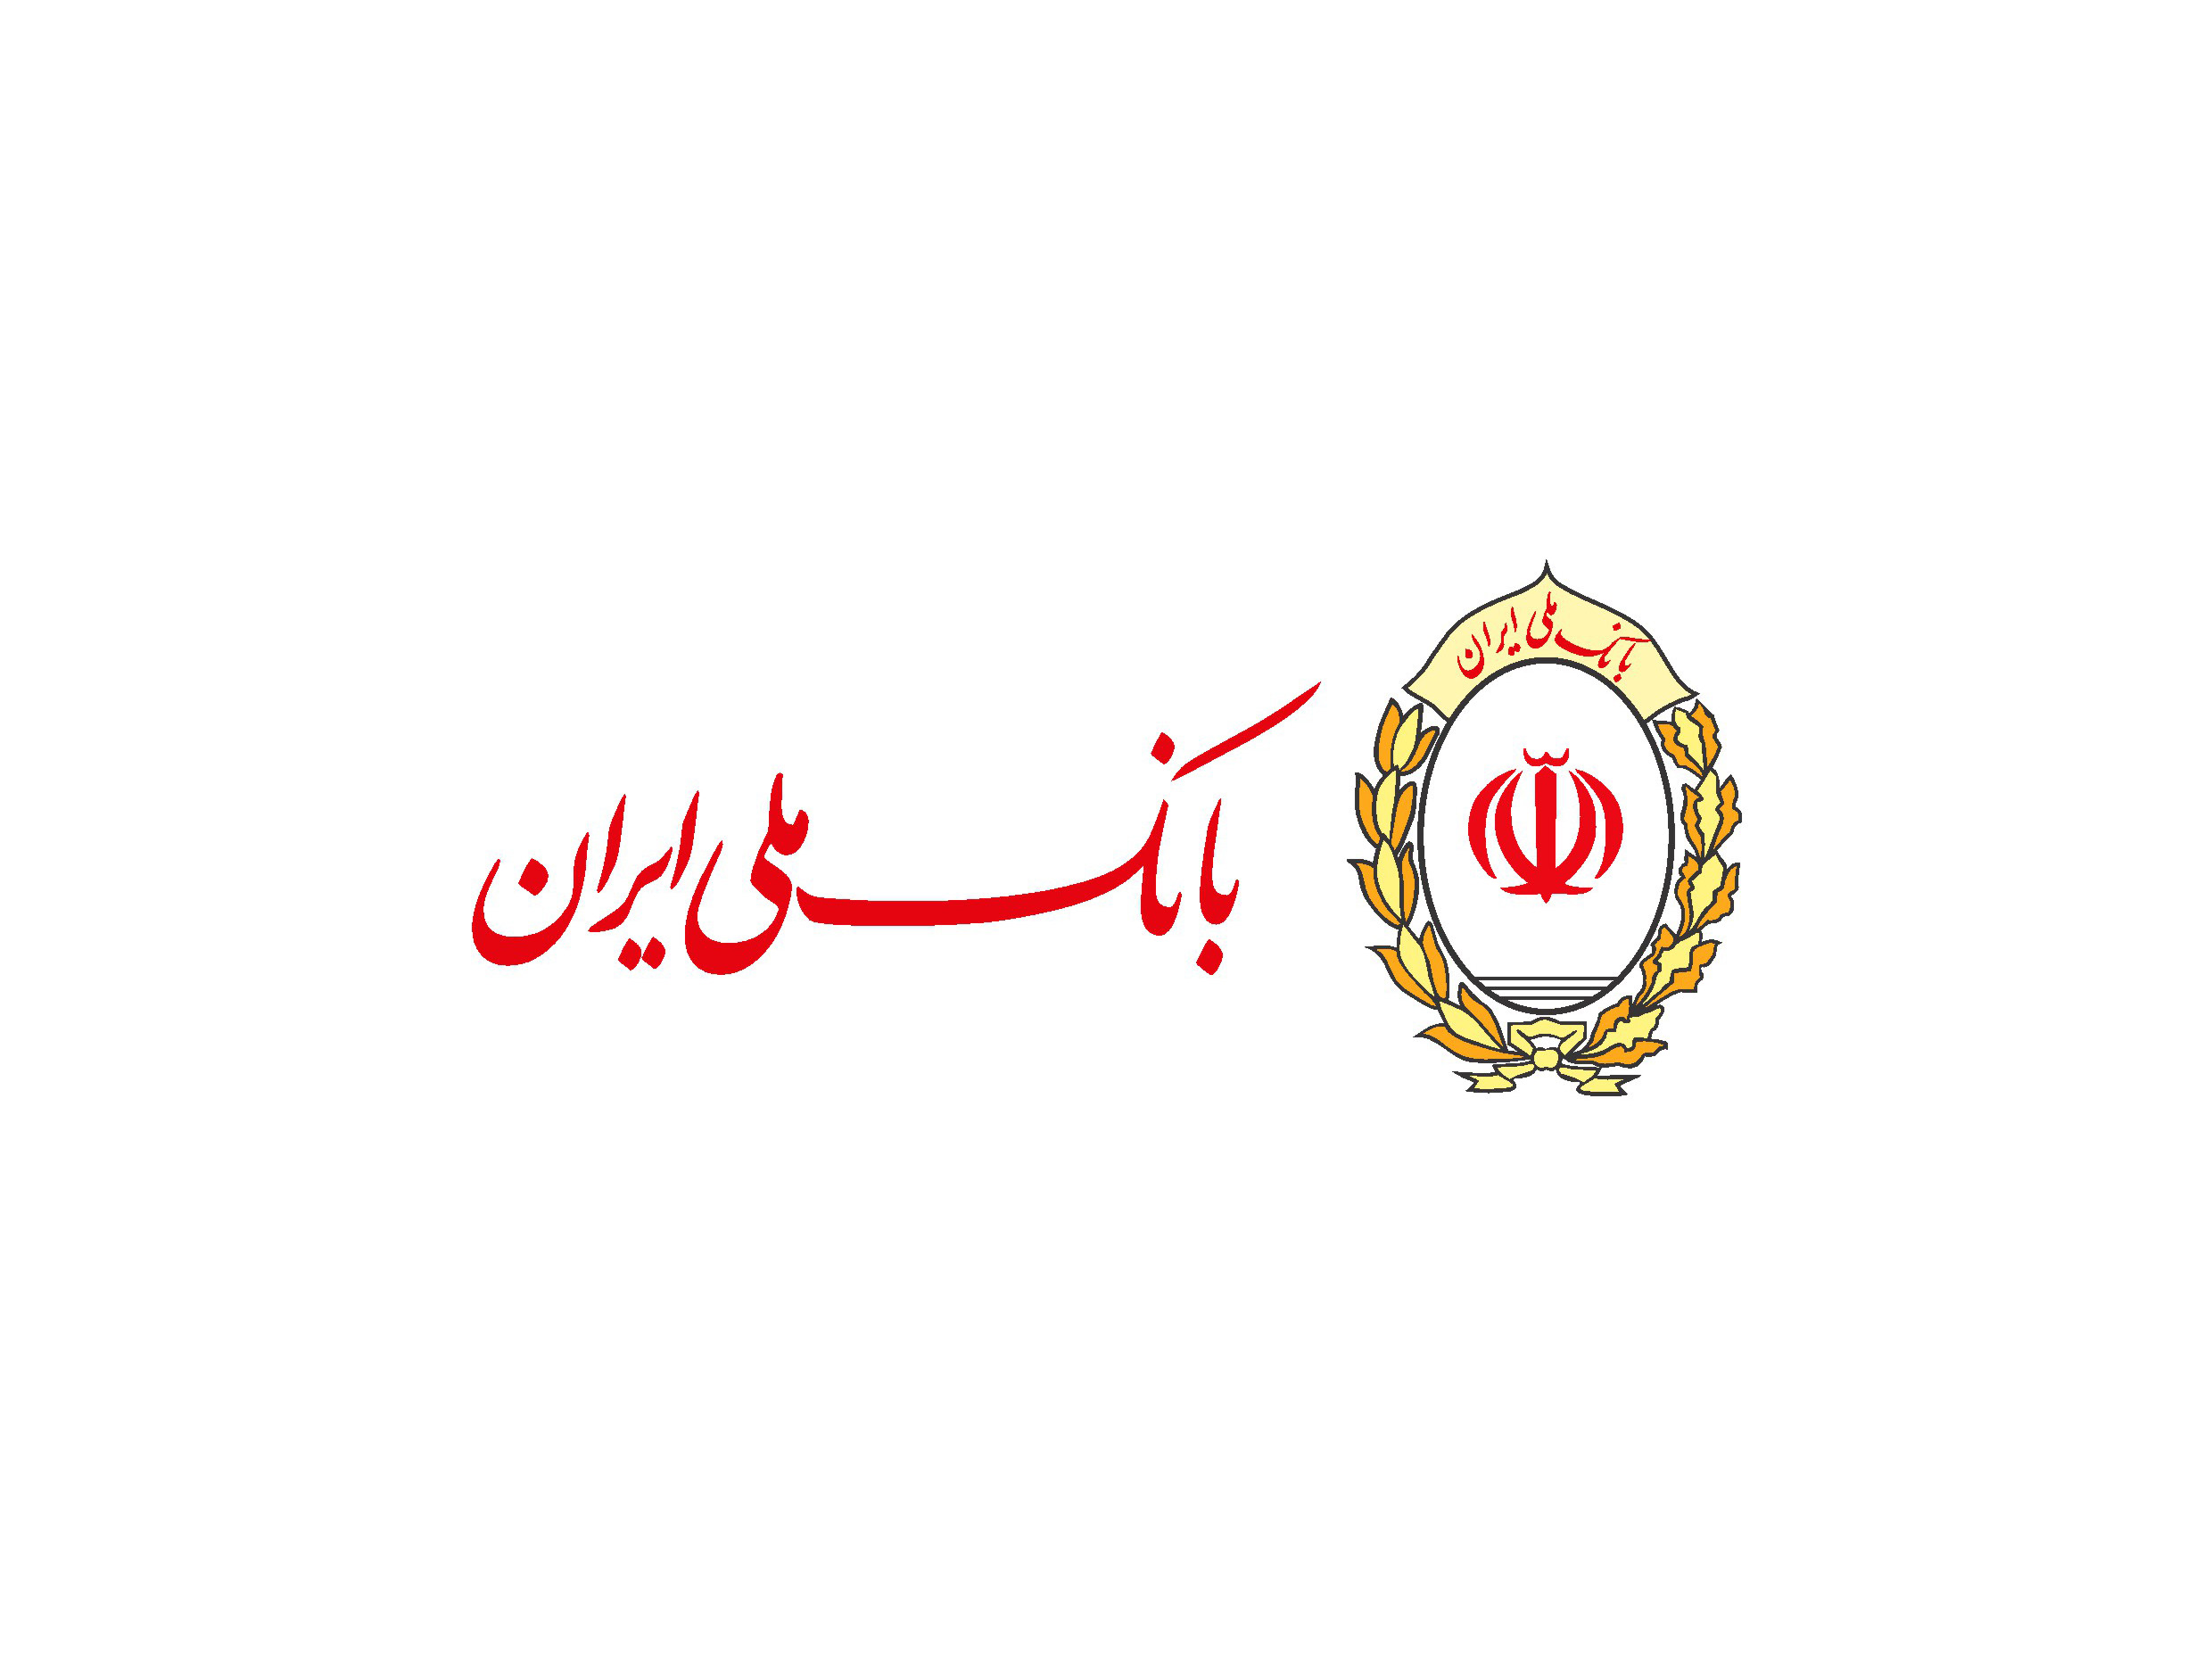 آغاز به کار غرفه بانک ملی ایران در شهر مشاغل کودکان